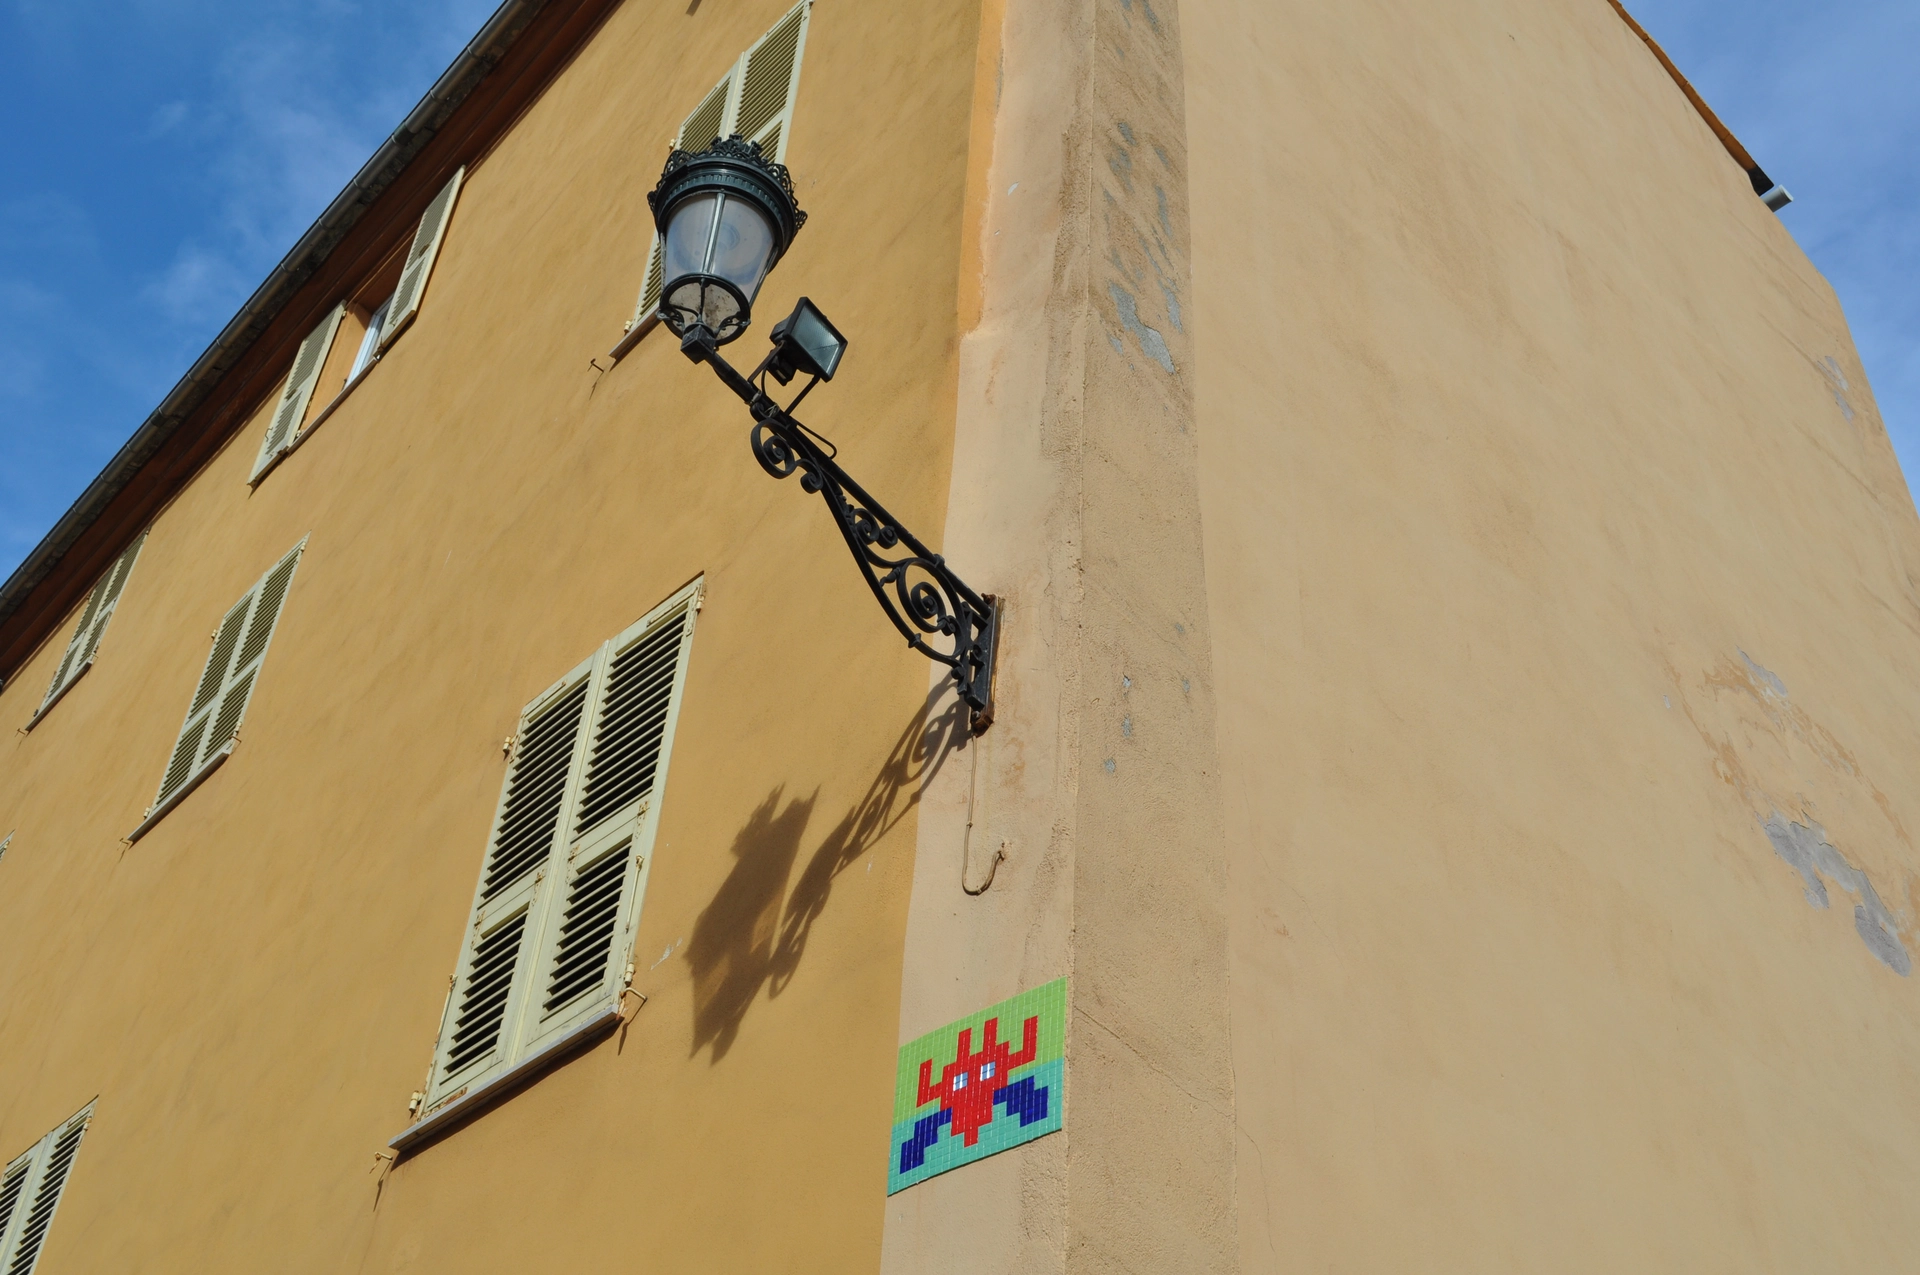 Oeuvre de Street Art réalisée par Invader à Bastia